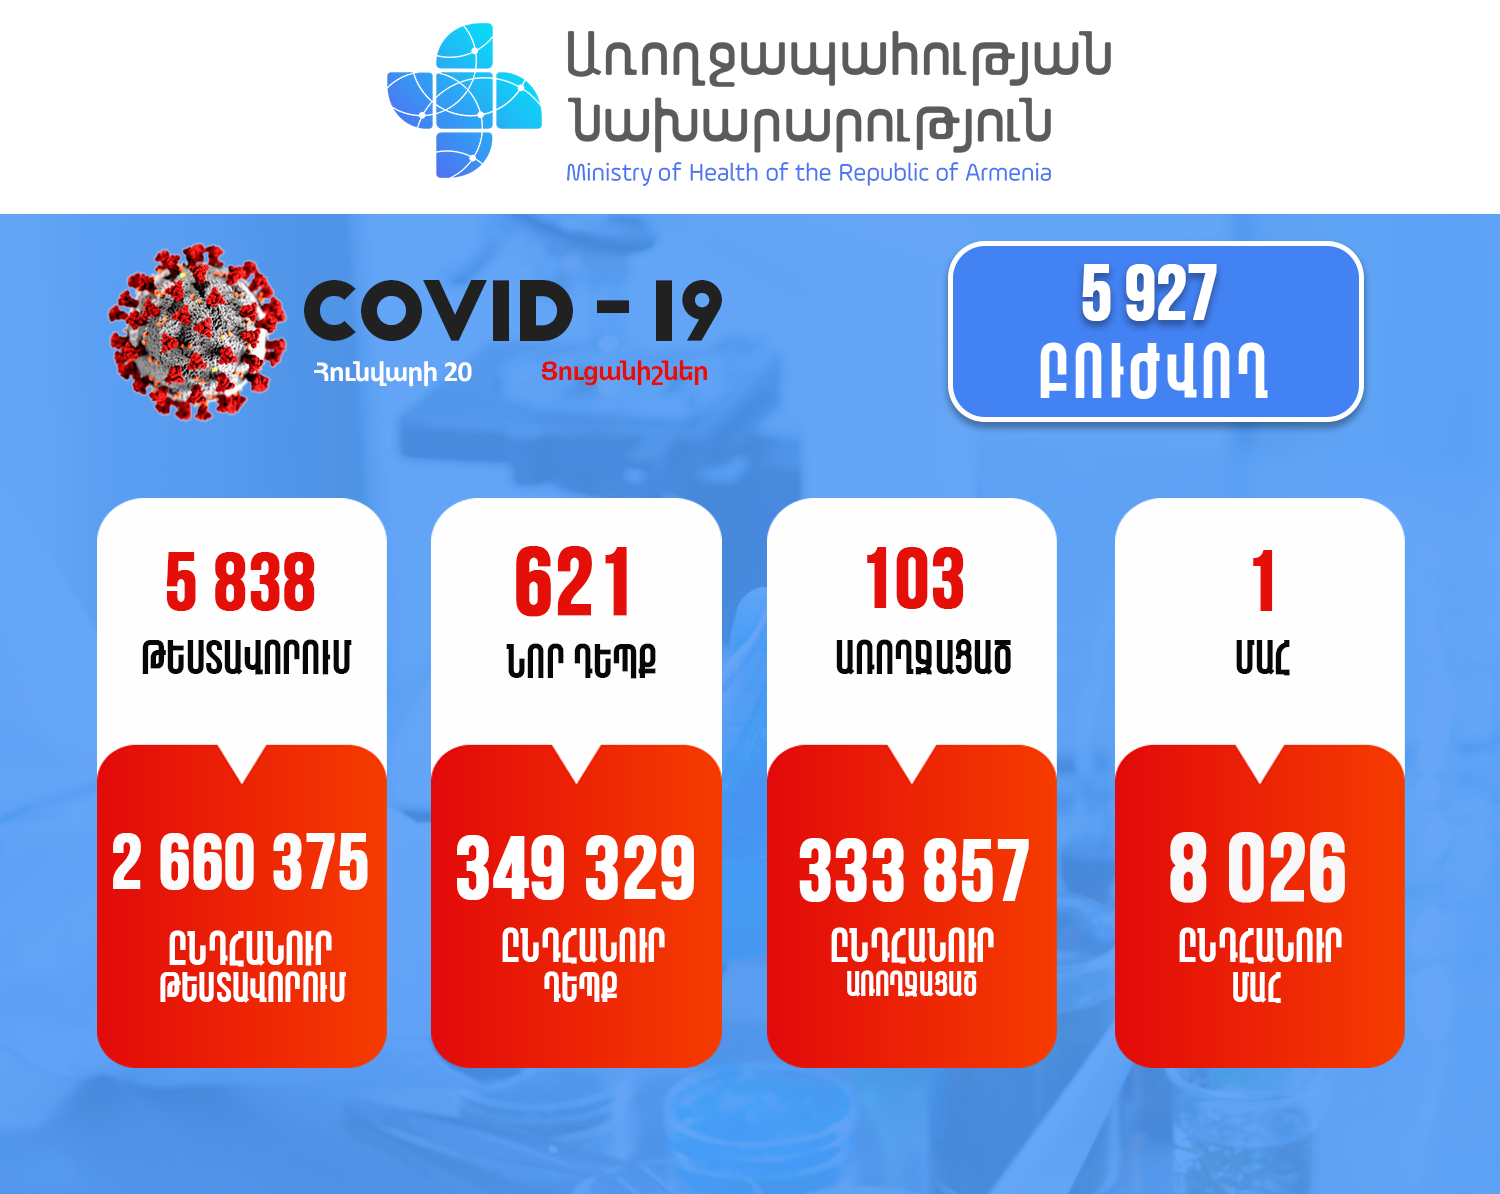 621 new COVID cases in Armenia